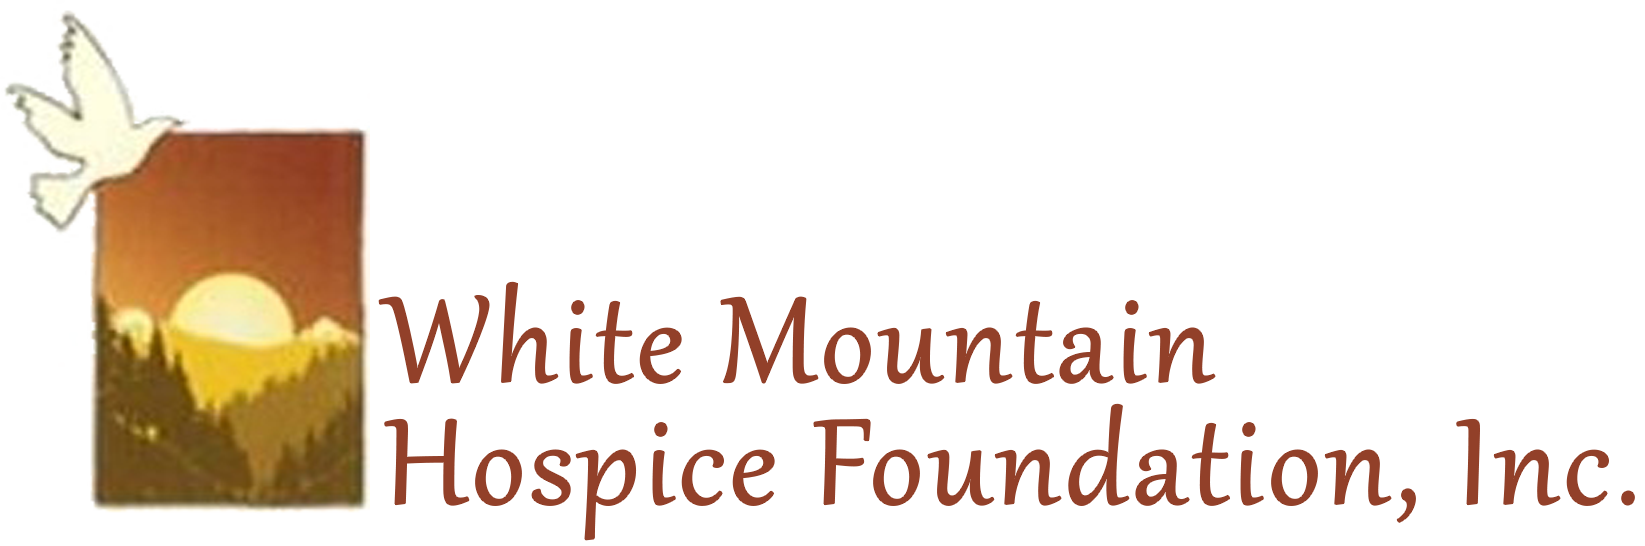 White Mountain Hospice Foundation logo